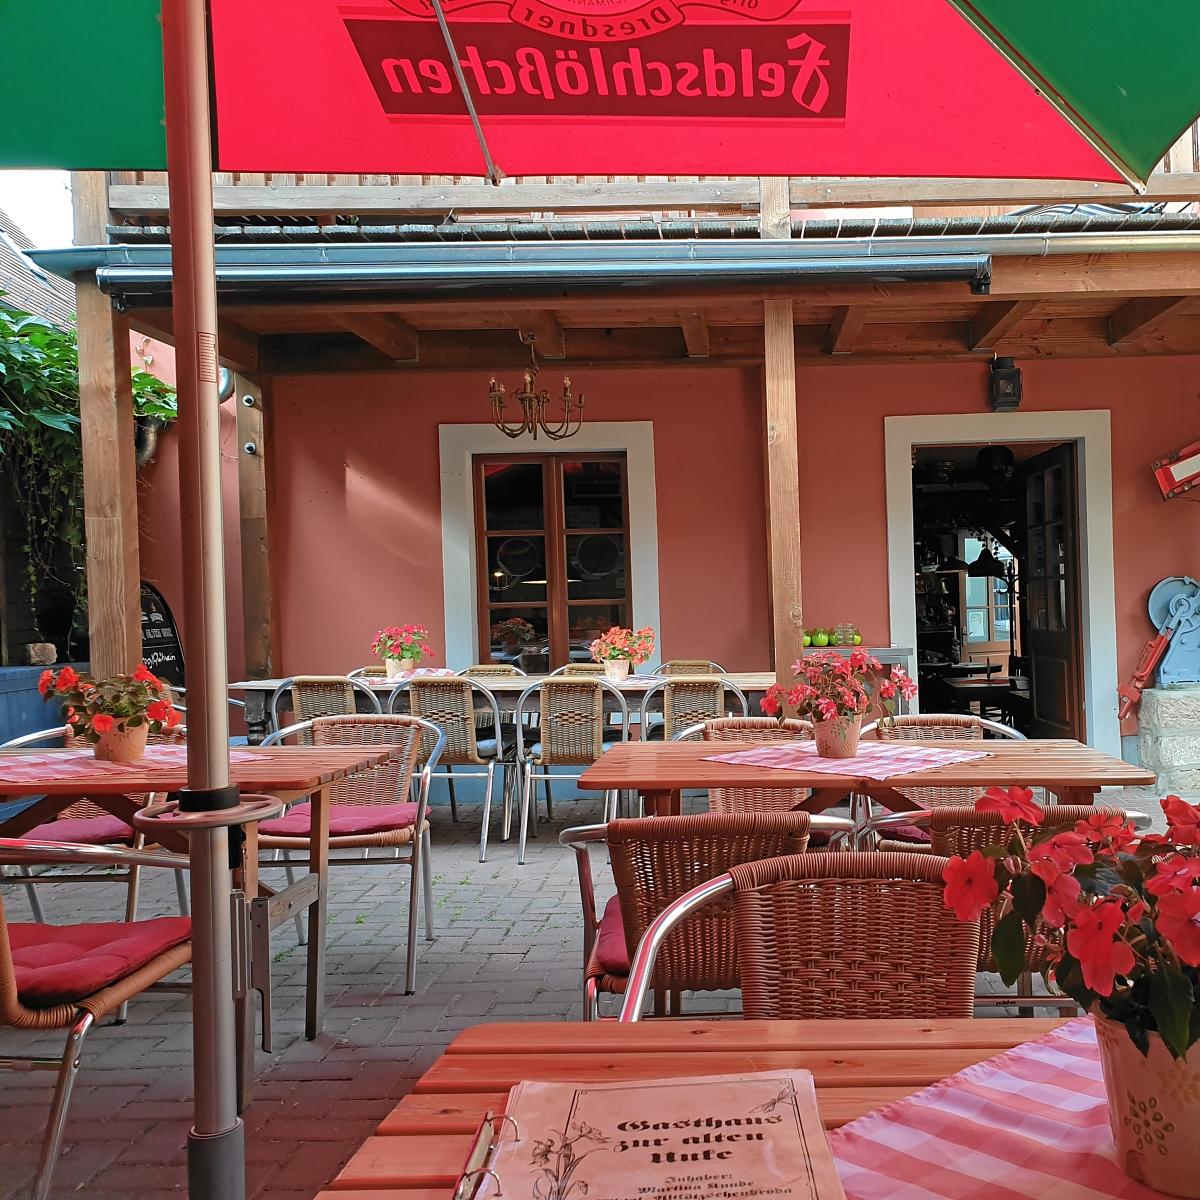 Restaurant "Gaststätte  Zur alten Unke " in Radebeul